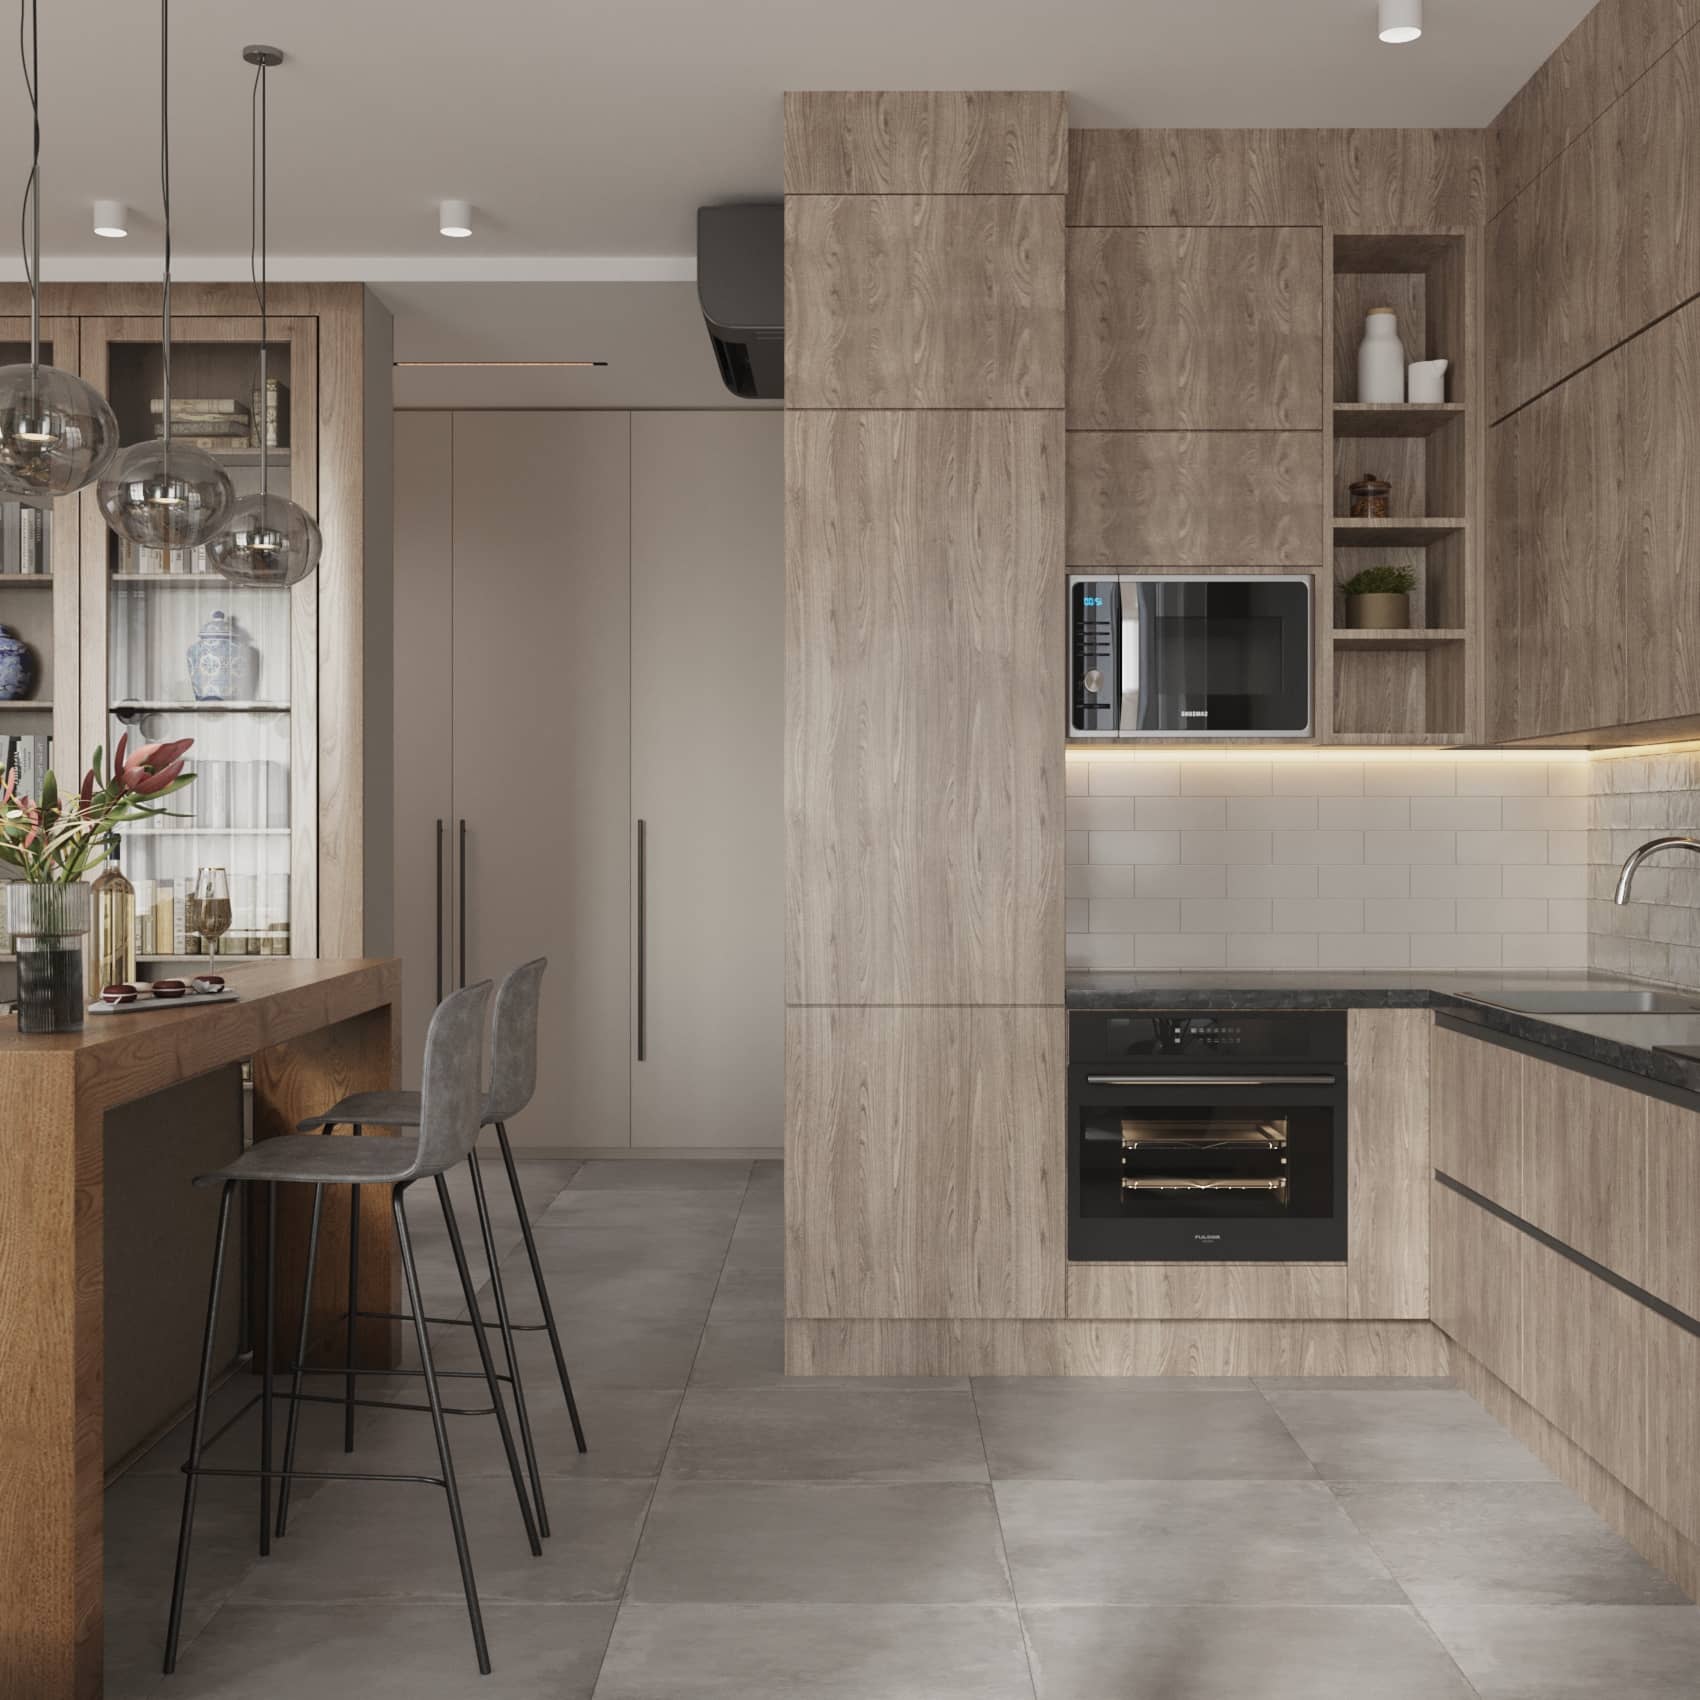 Оформление интерьера гостиной-кухни трехкомнатной квартиры в светло серый цвет в современном стиле. Фото № 62620.